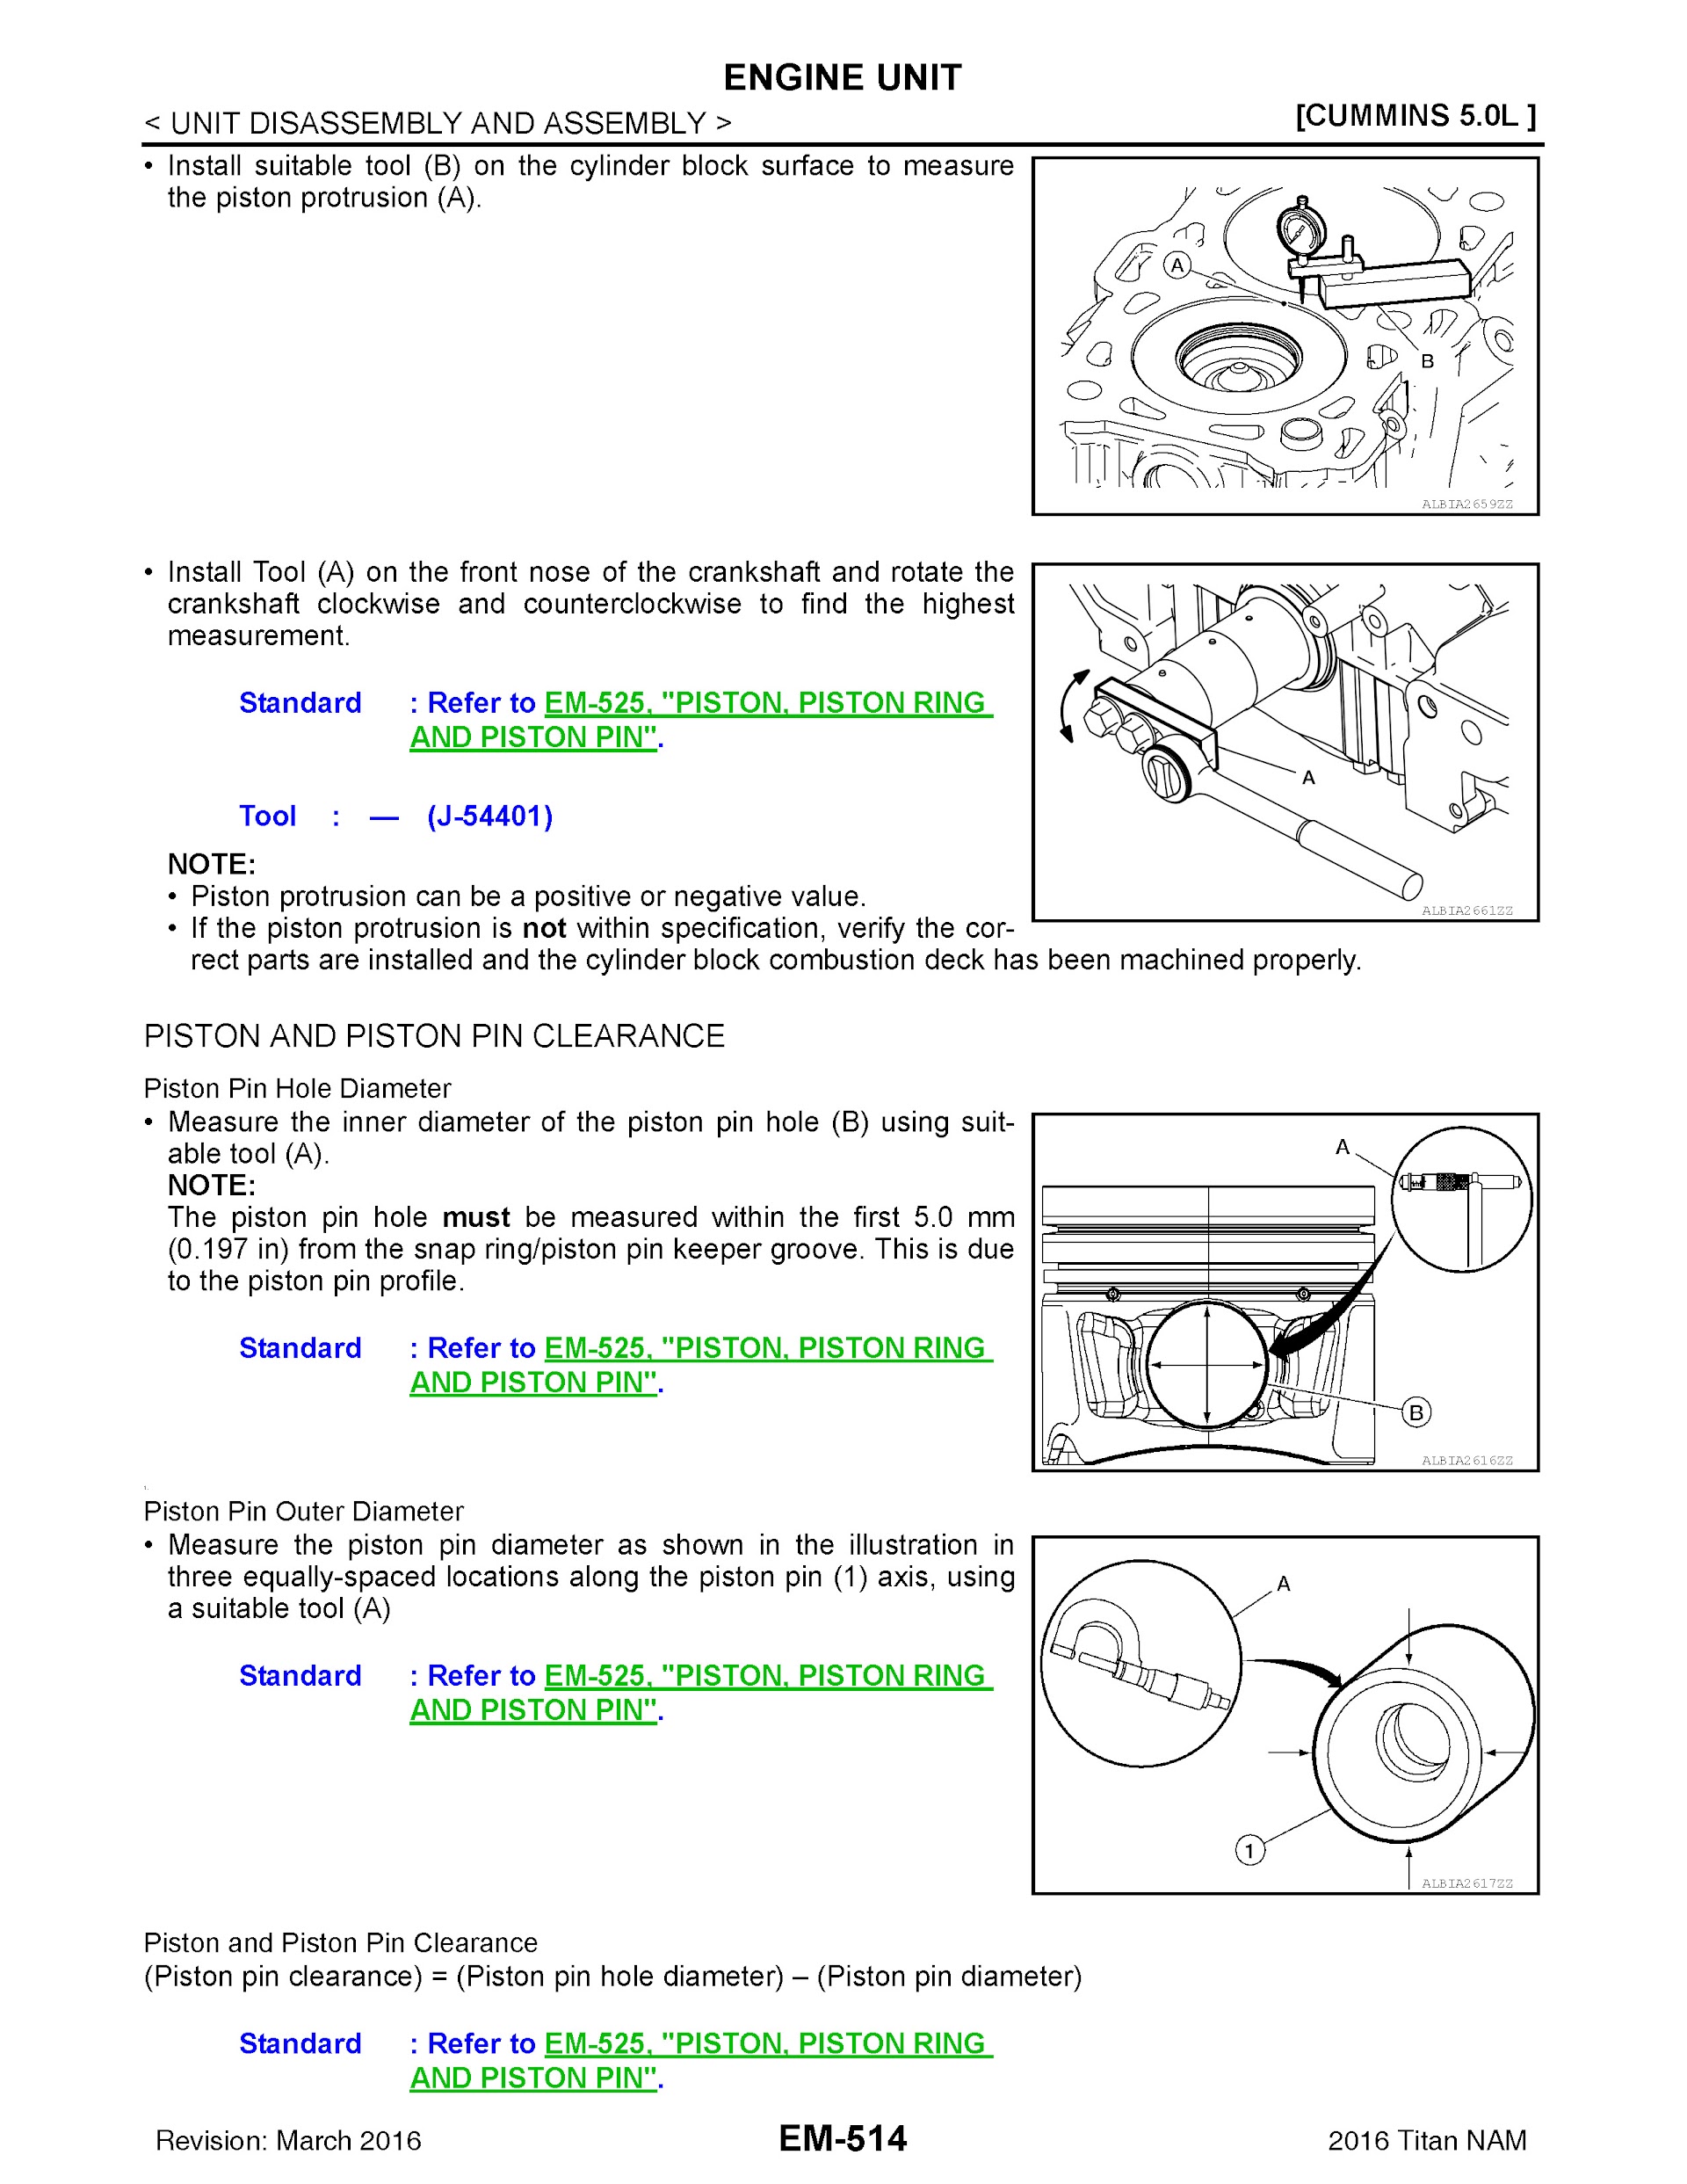 2016 Nissan Titan XD Repair Manual, Engine Unit Cummins 5.0L